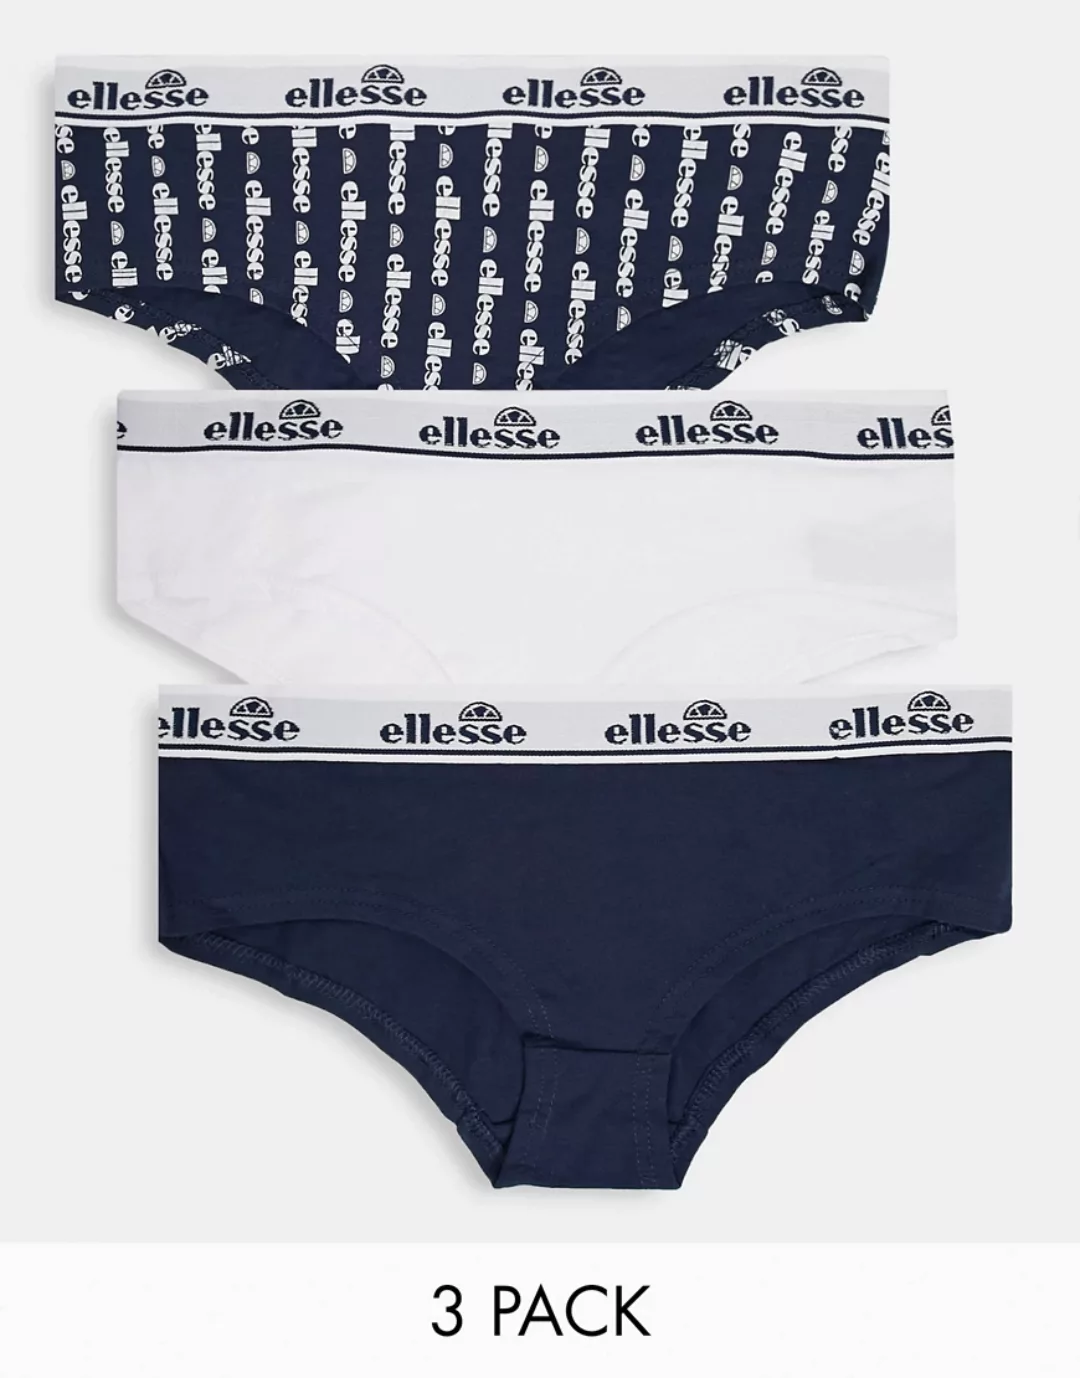 ellesse – Freche Slips mit Logo in Marineblau und Weiß im 3er-Pack günstig online kaufen